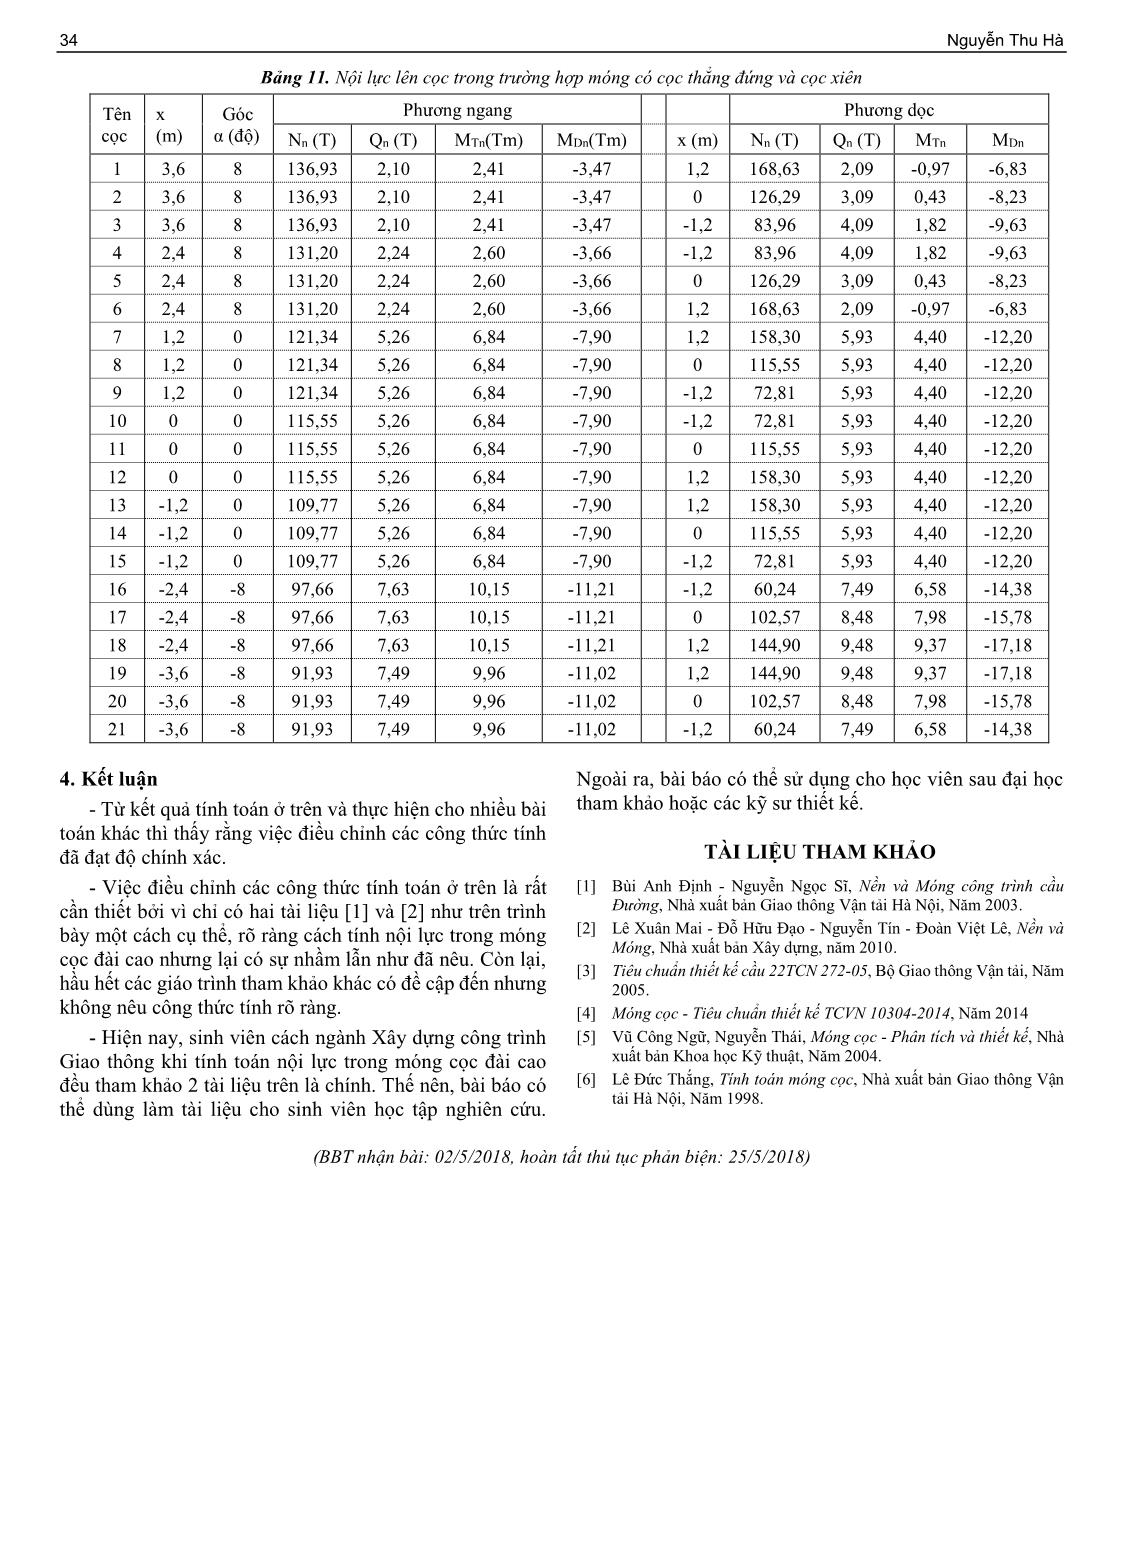 Một số điều chỉnh khi tính toán nội lực trong cọc đối với móng cọc đài cao theo các tài liệu hiện hành trang 5